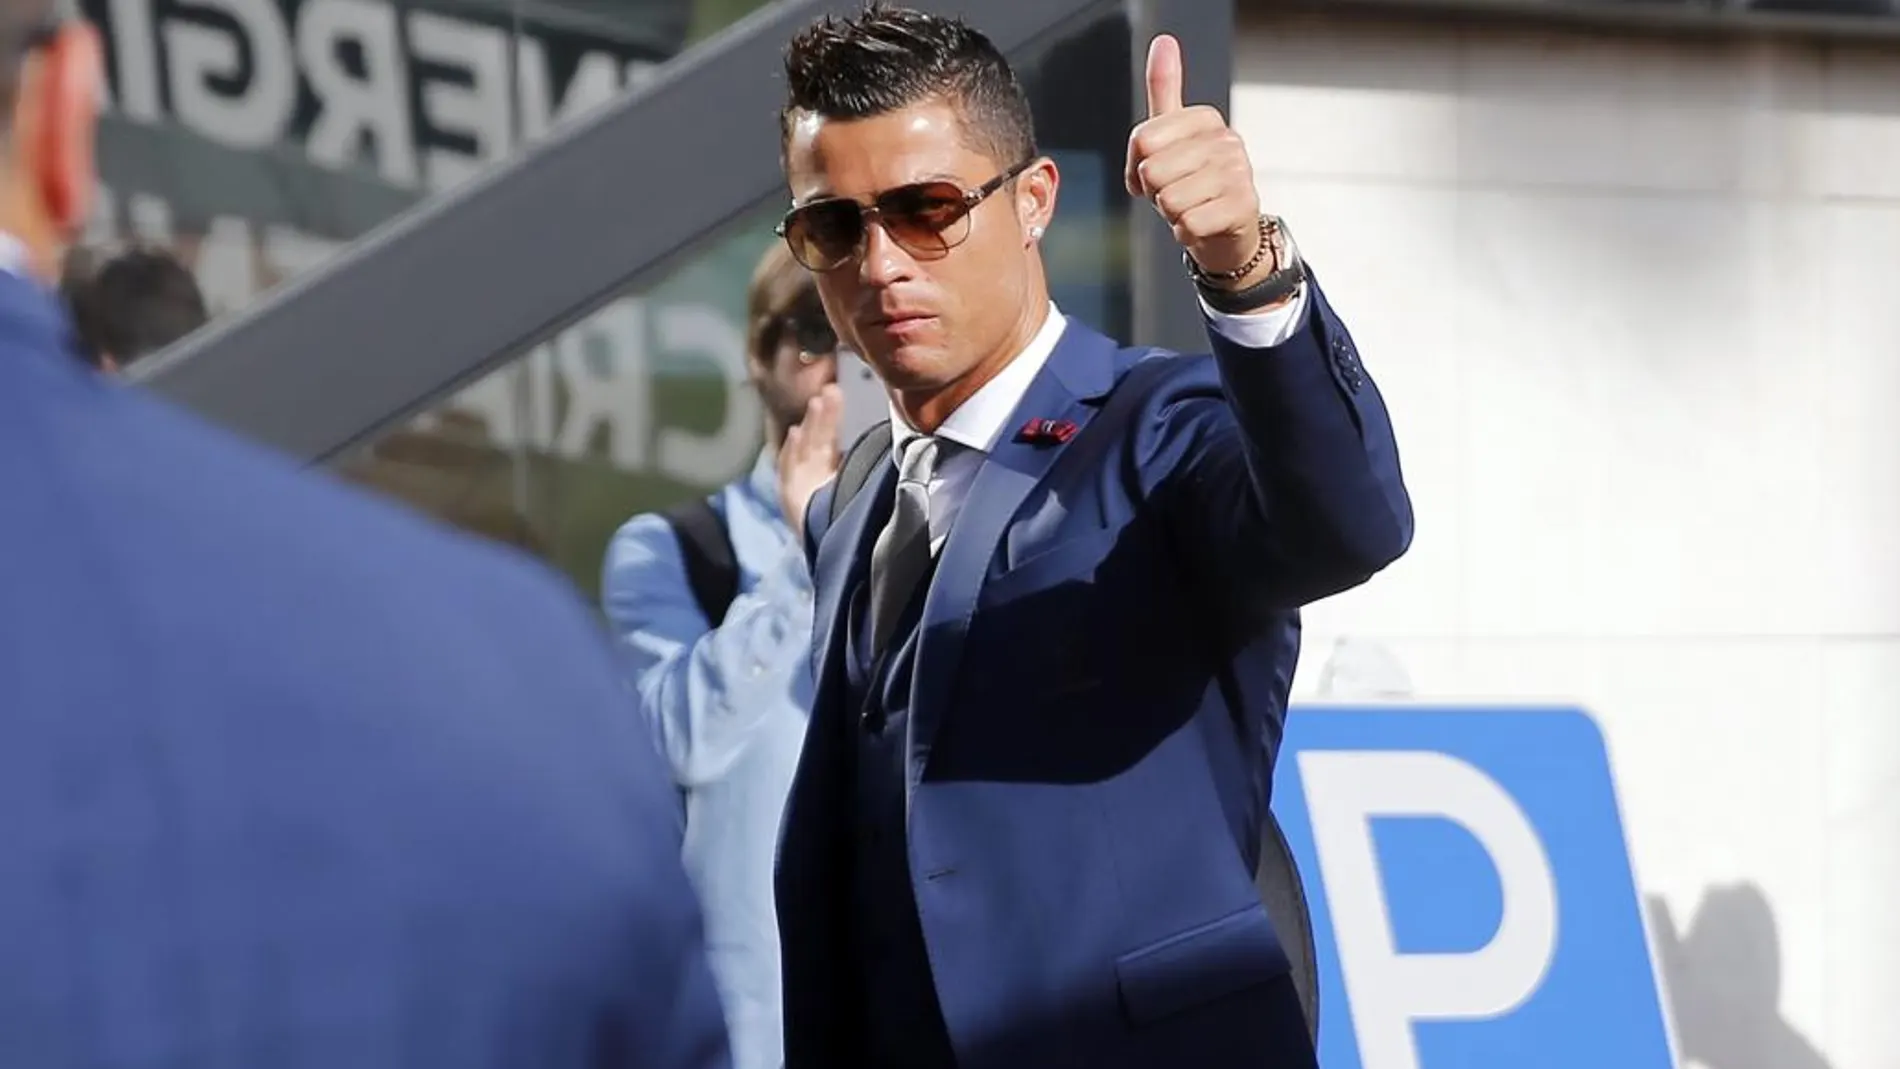 El delantero portugués Cristiano Ronaldo saluda a los aficionados antes de la salida de la selección lusa en el aeropuerto General Humberto Delgado en Lisboa